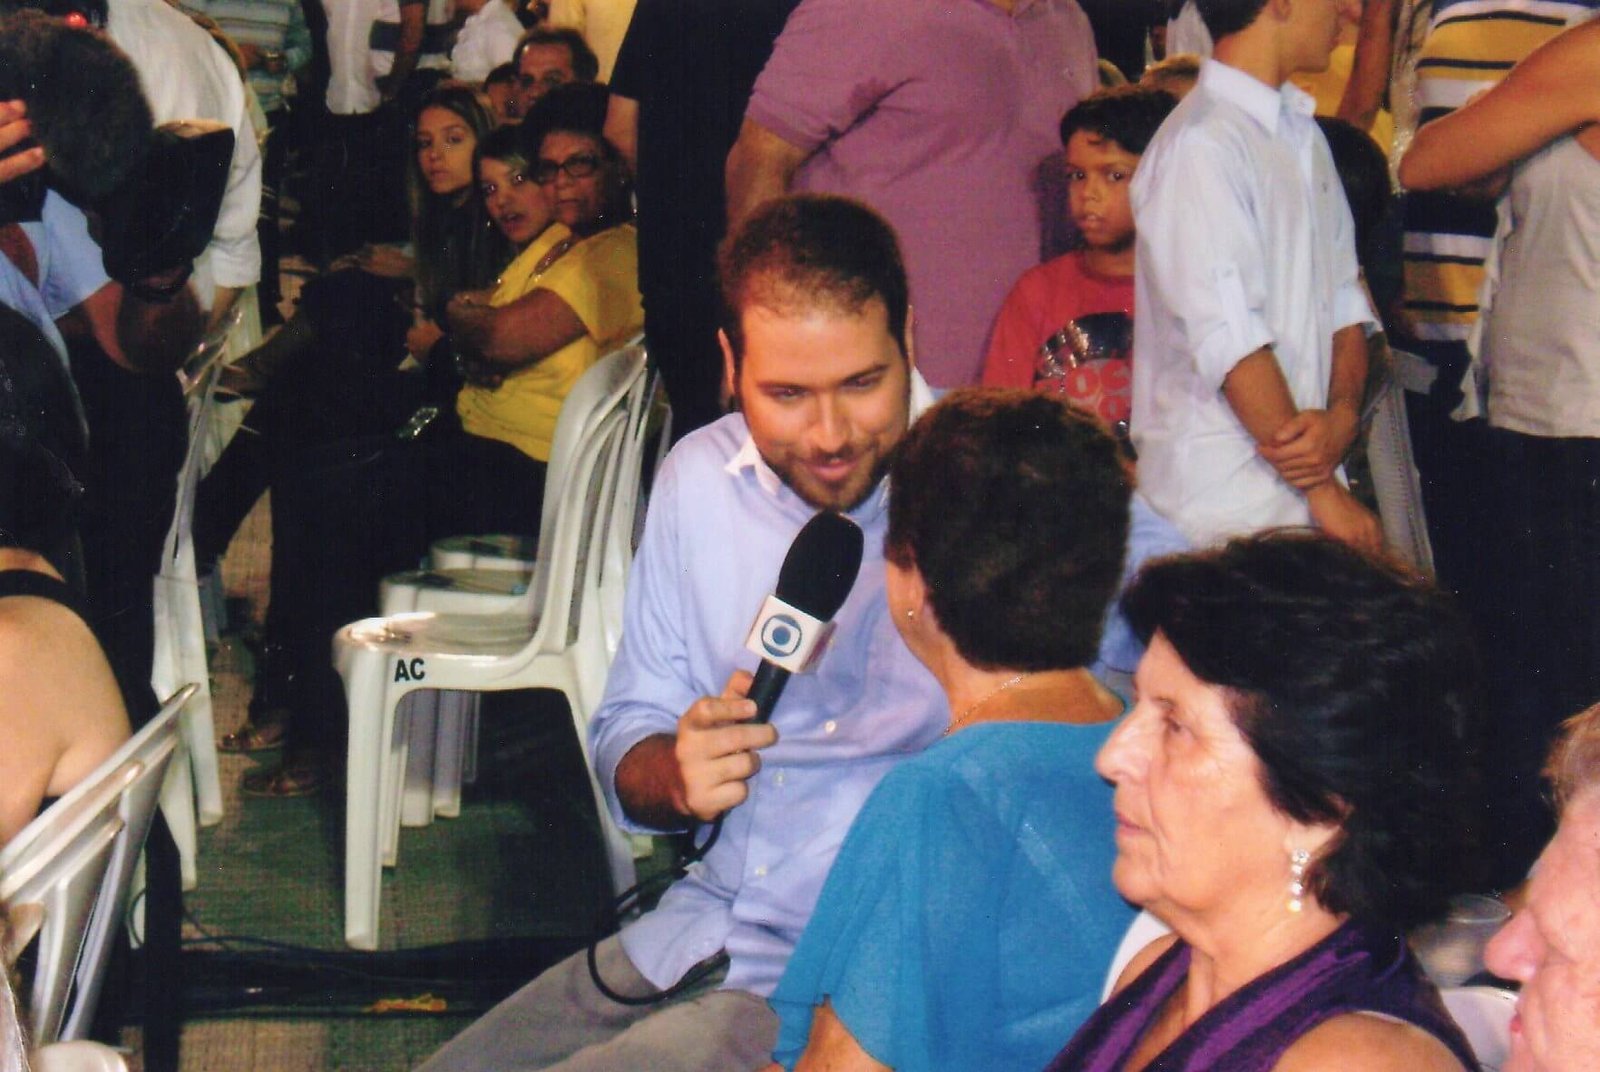 As imagens mostram Gercy Volpato sendo entrevistada por dois repórteres durante o show de Roberto Carlos em Cachoeiro, no ano de 2009.